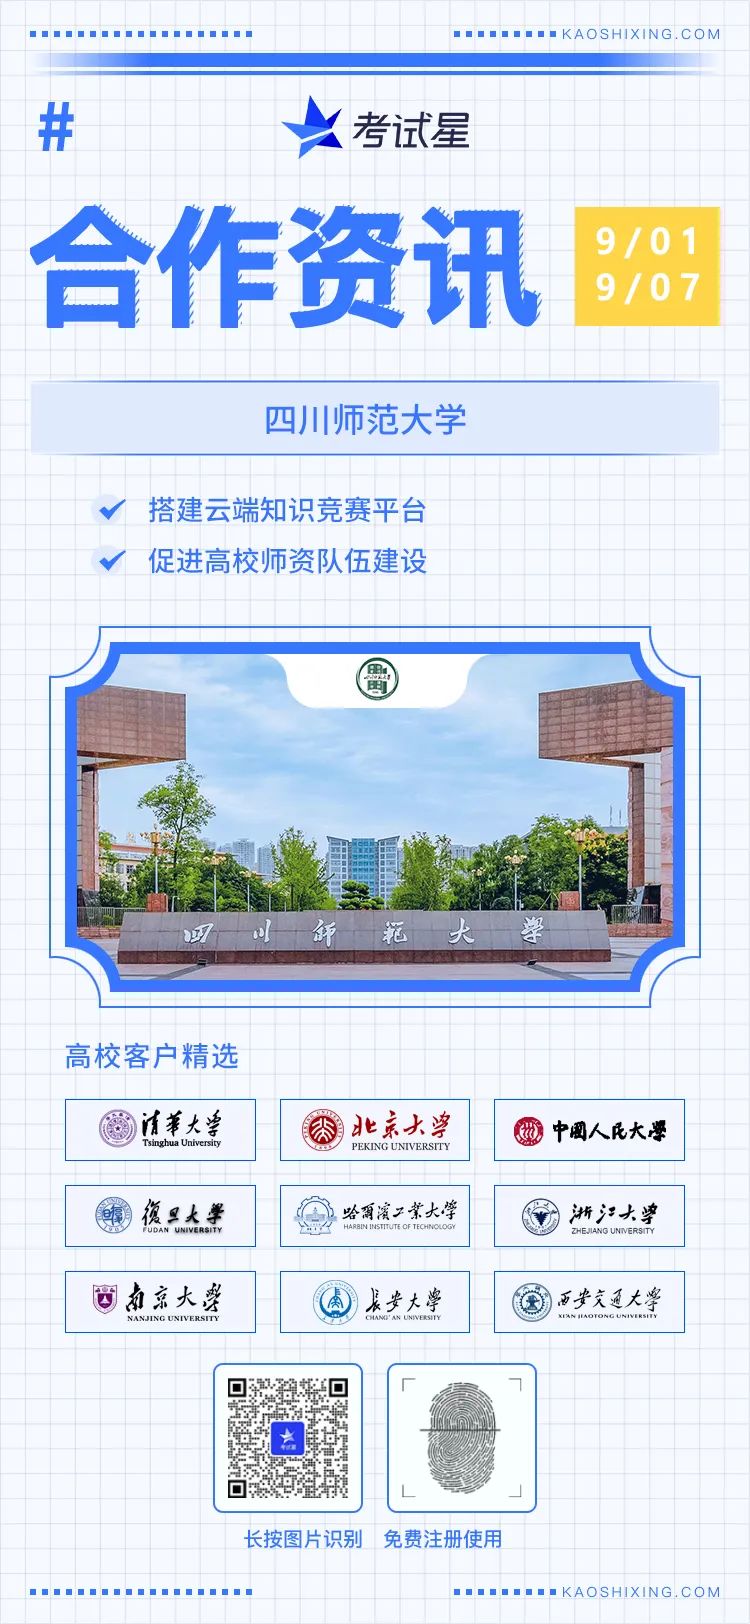 四川师范大学-知识竞赛平台